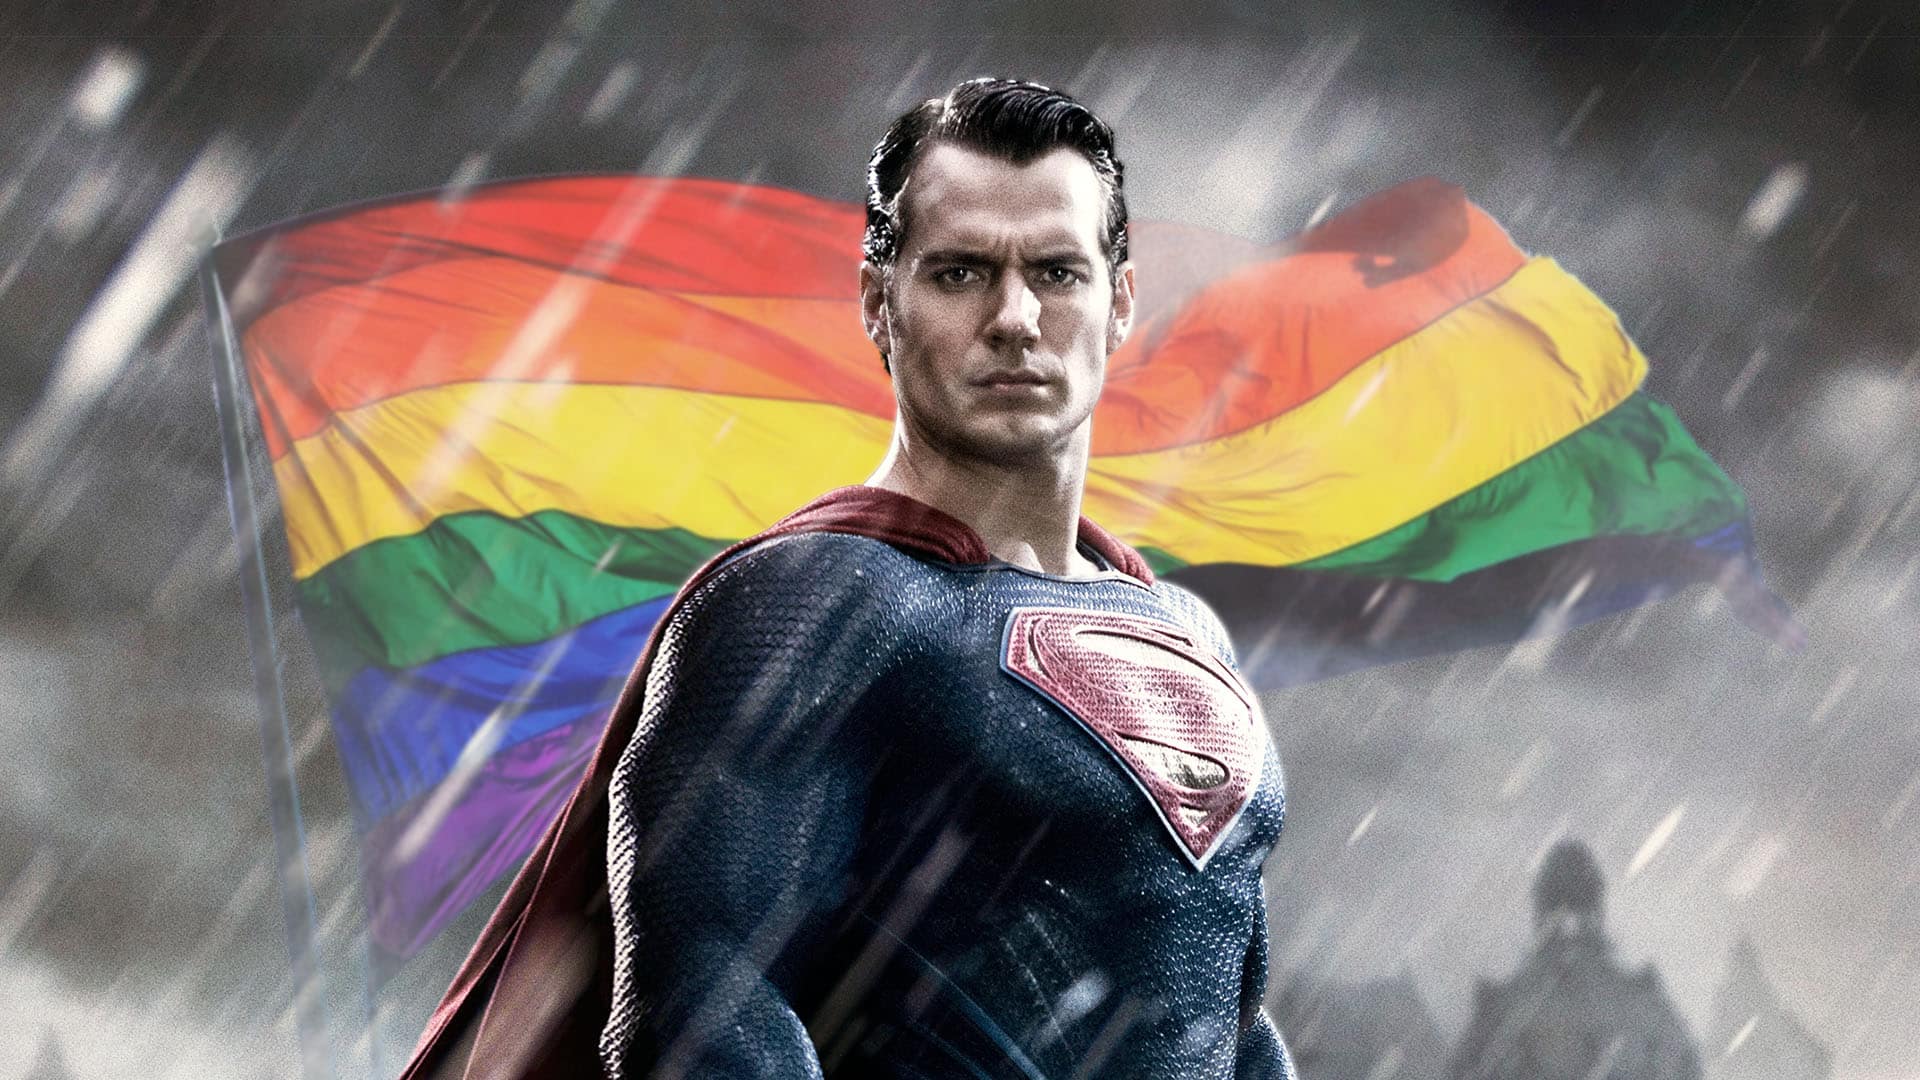 najnovsi superman bisexual